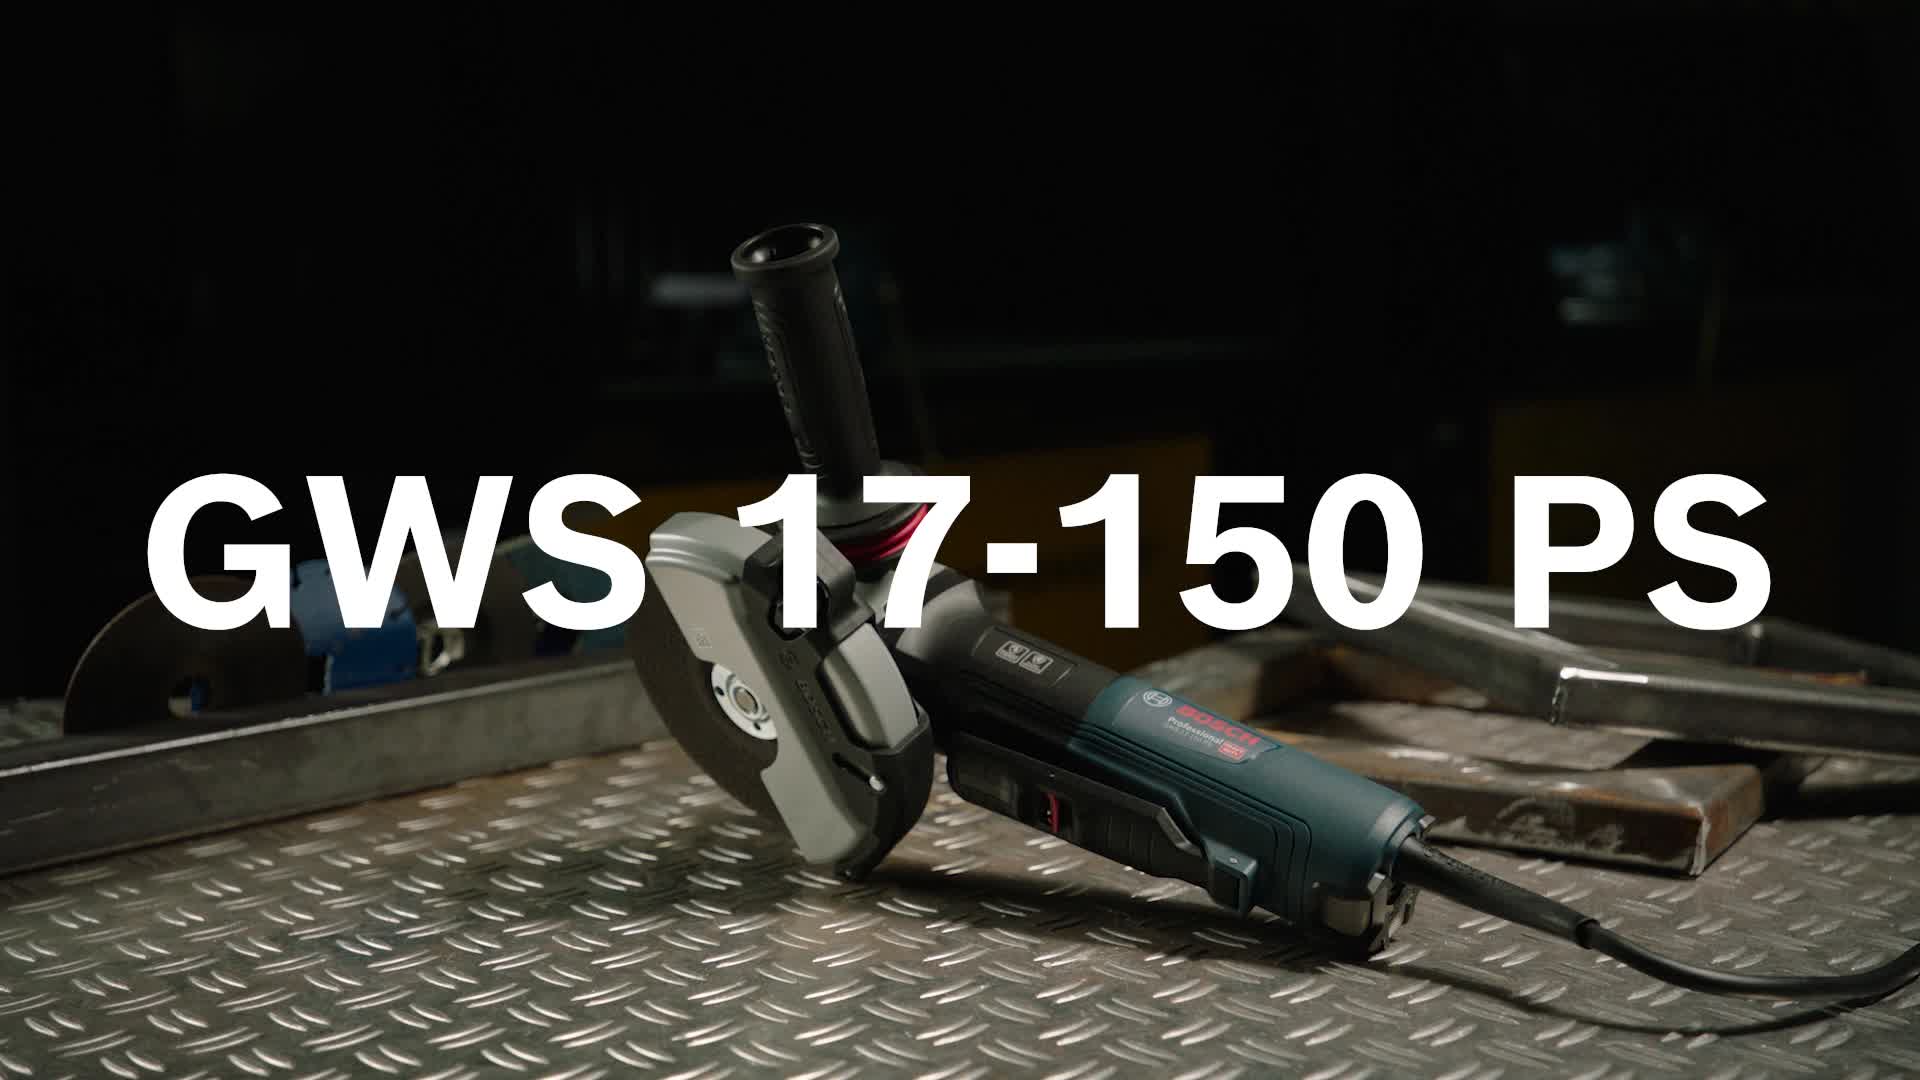 GWS 17-150 PS